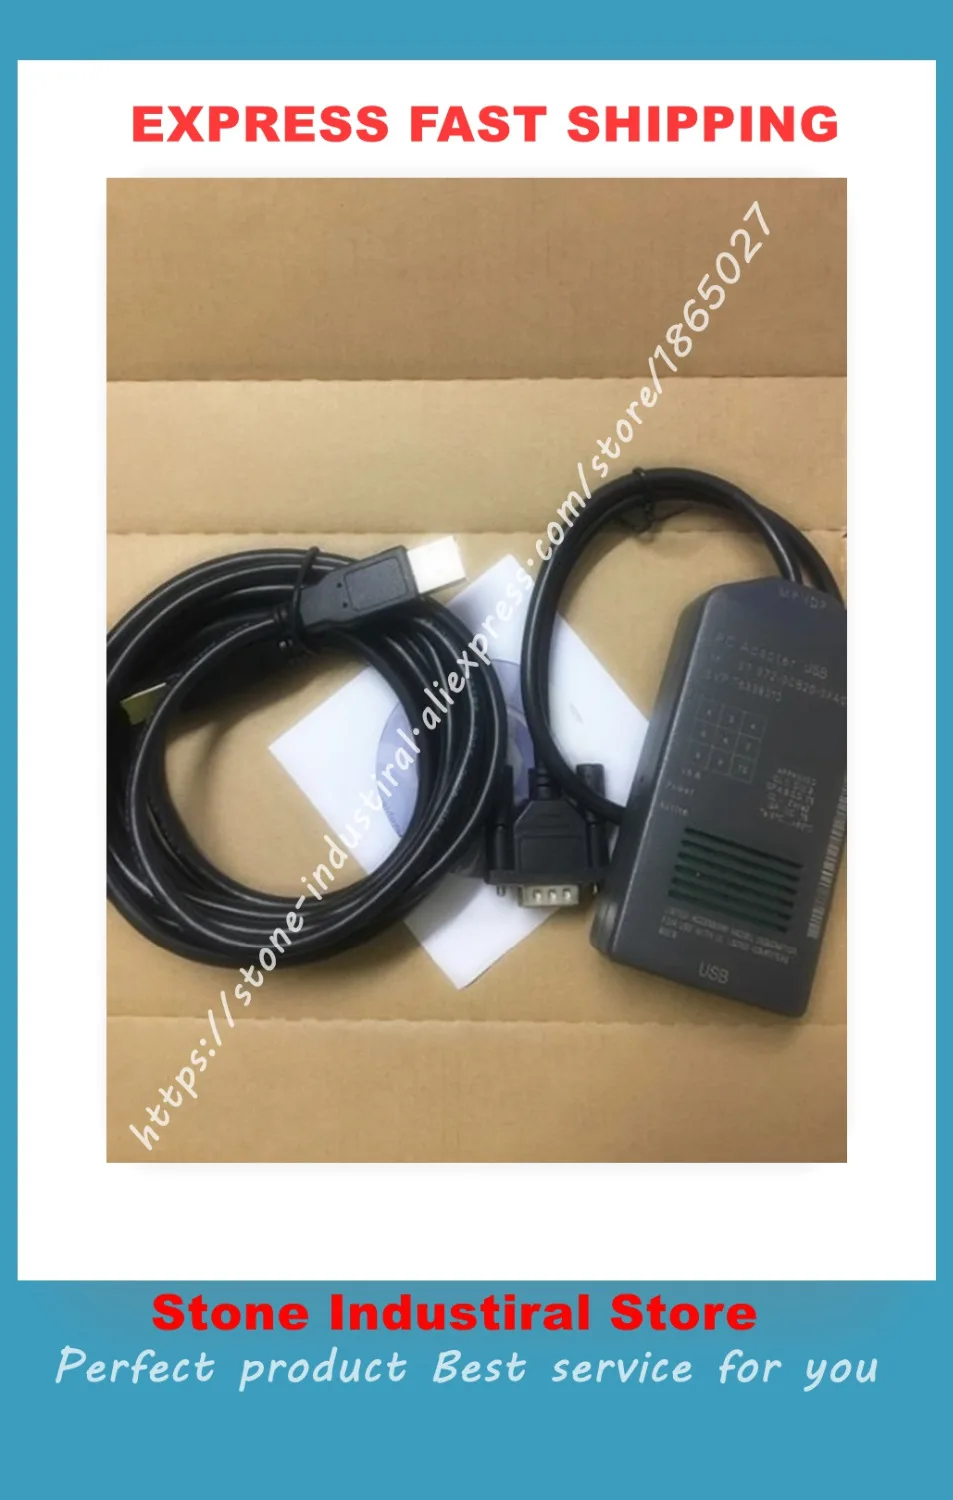 6ES7 972-0CB20-0XA0 USB-MPI+200/300/400 Series Programming Cable 6ES7972-0CB20-0XA0 New